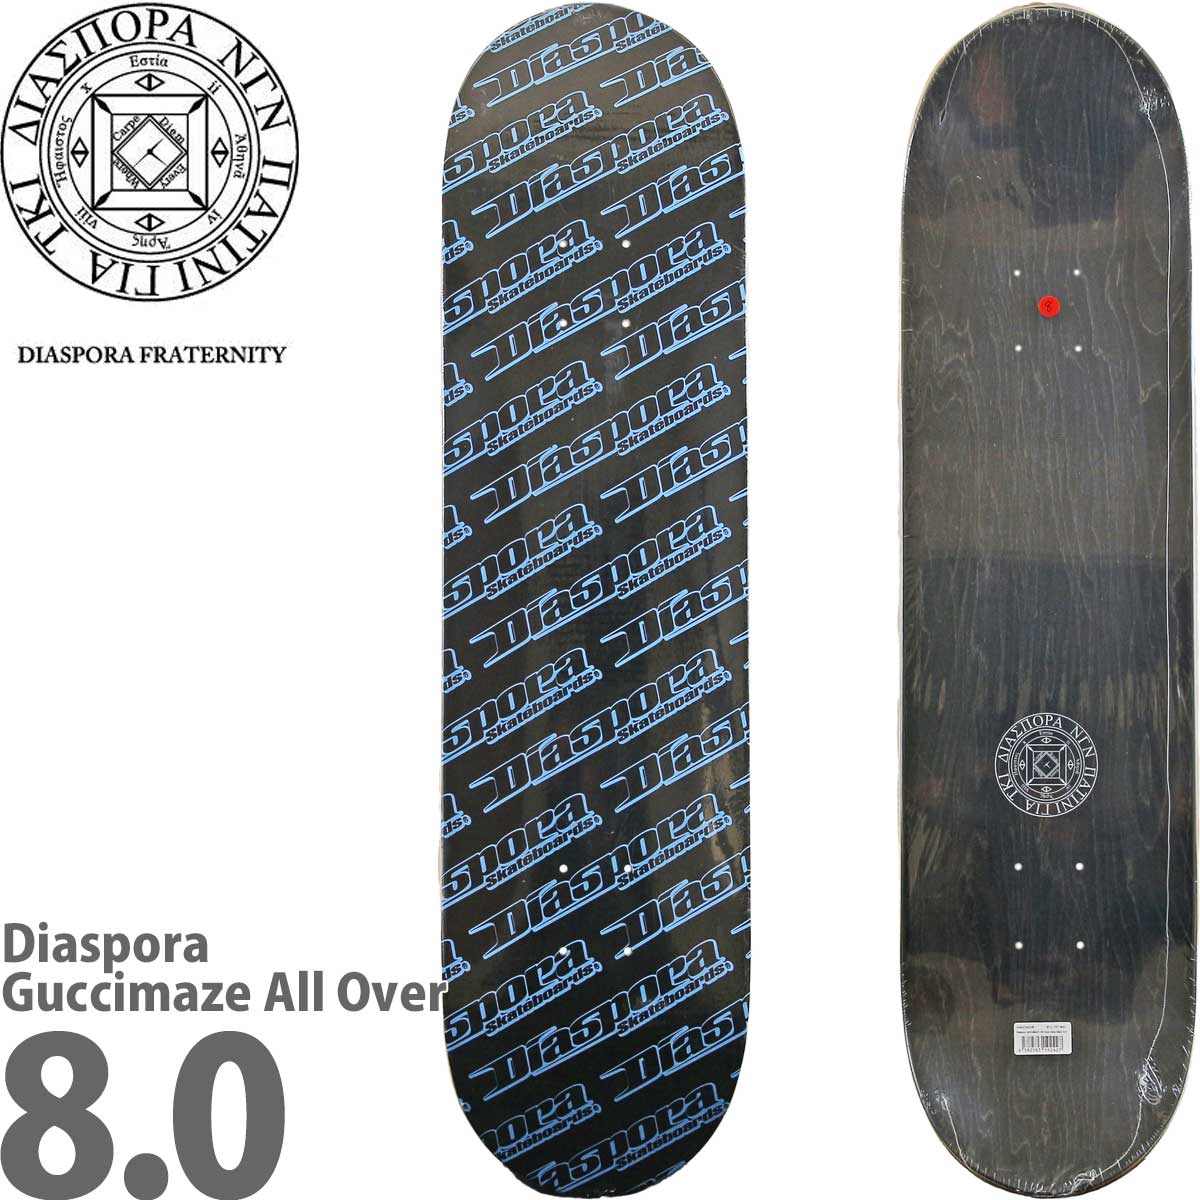 ディアスポラ 8.0 8.25インチ スケボー デッキ Diaspora Skateboards Guccimaze All Over Deck  グッチメイズ スケートボード おしゃれ ブランド スケボーデッキ